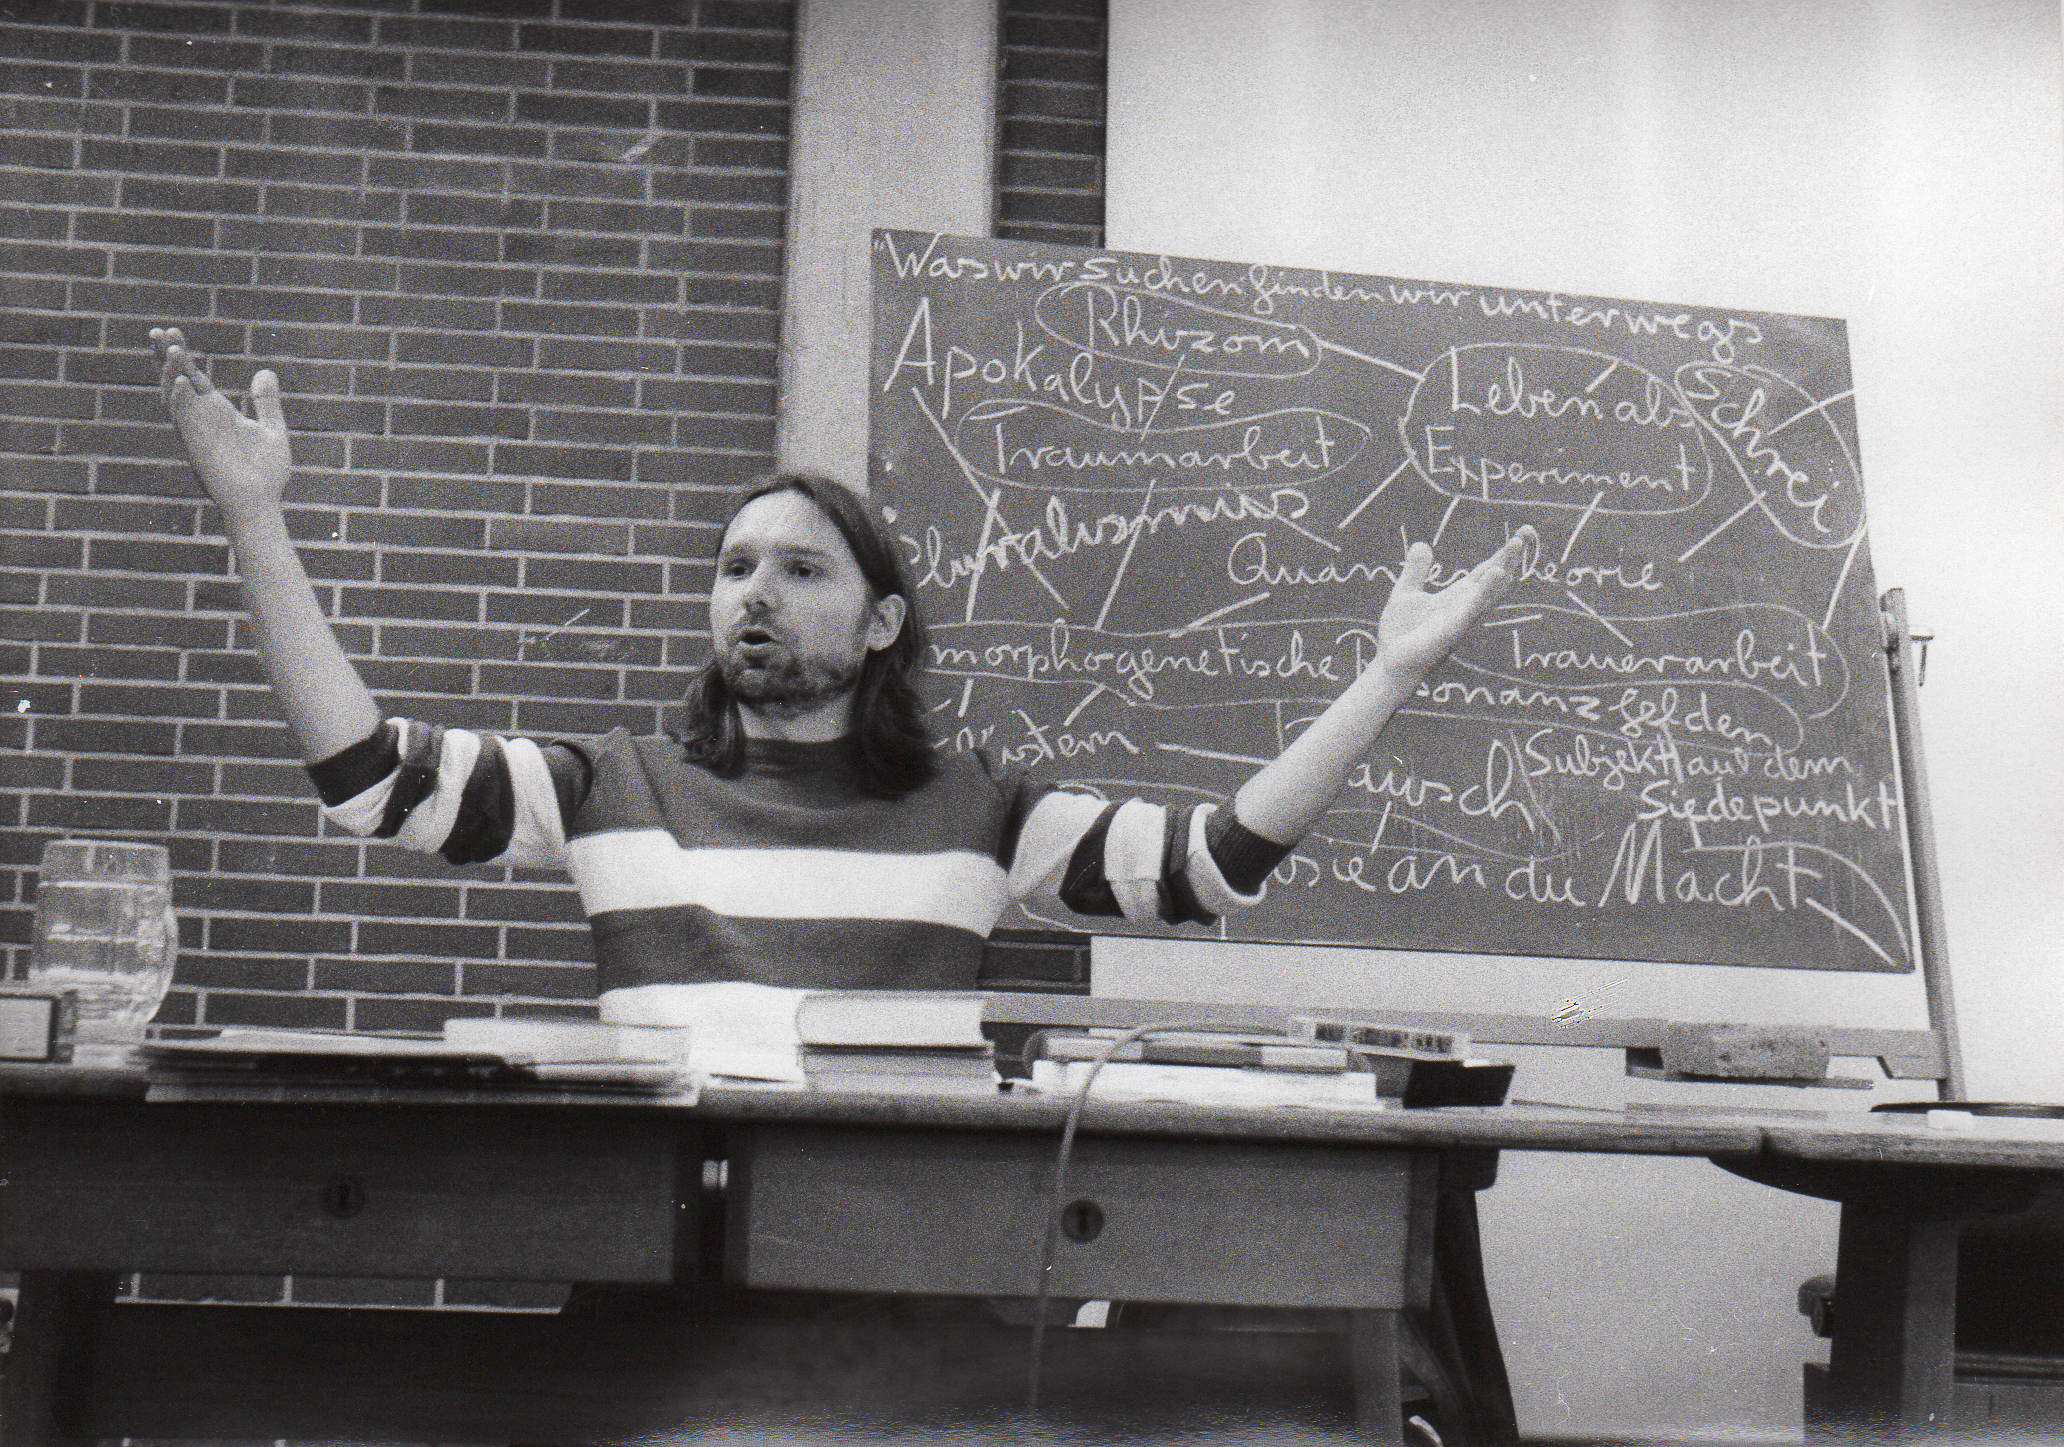 Joachim Krebs beim lehren, seine Arme sind erhoben, im Hintergrund eine vollgeschriebene Tafel.